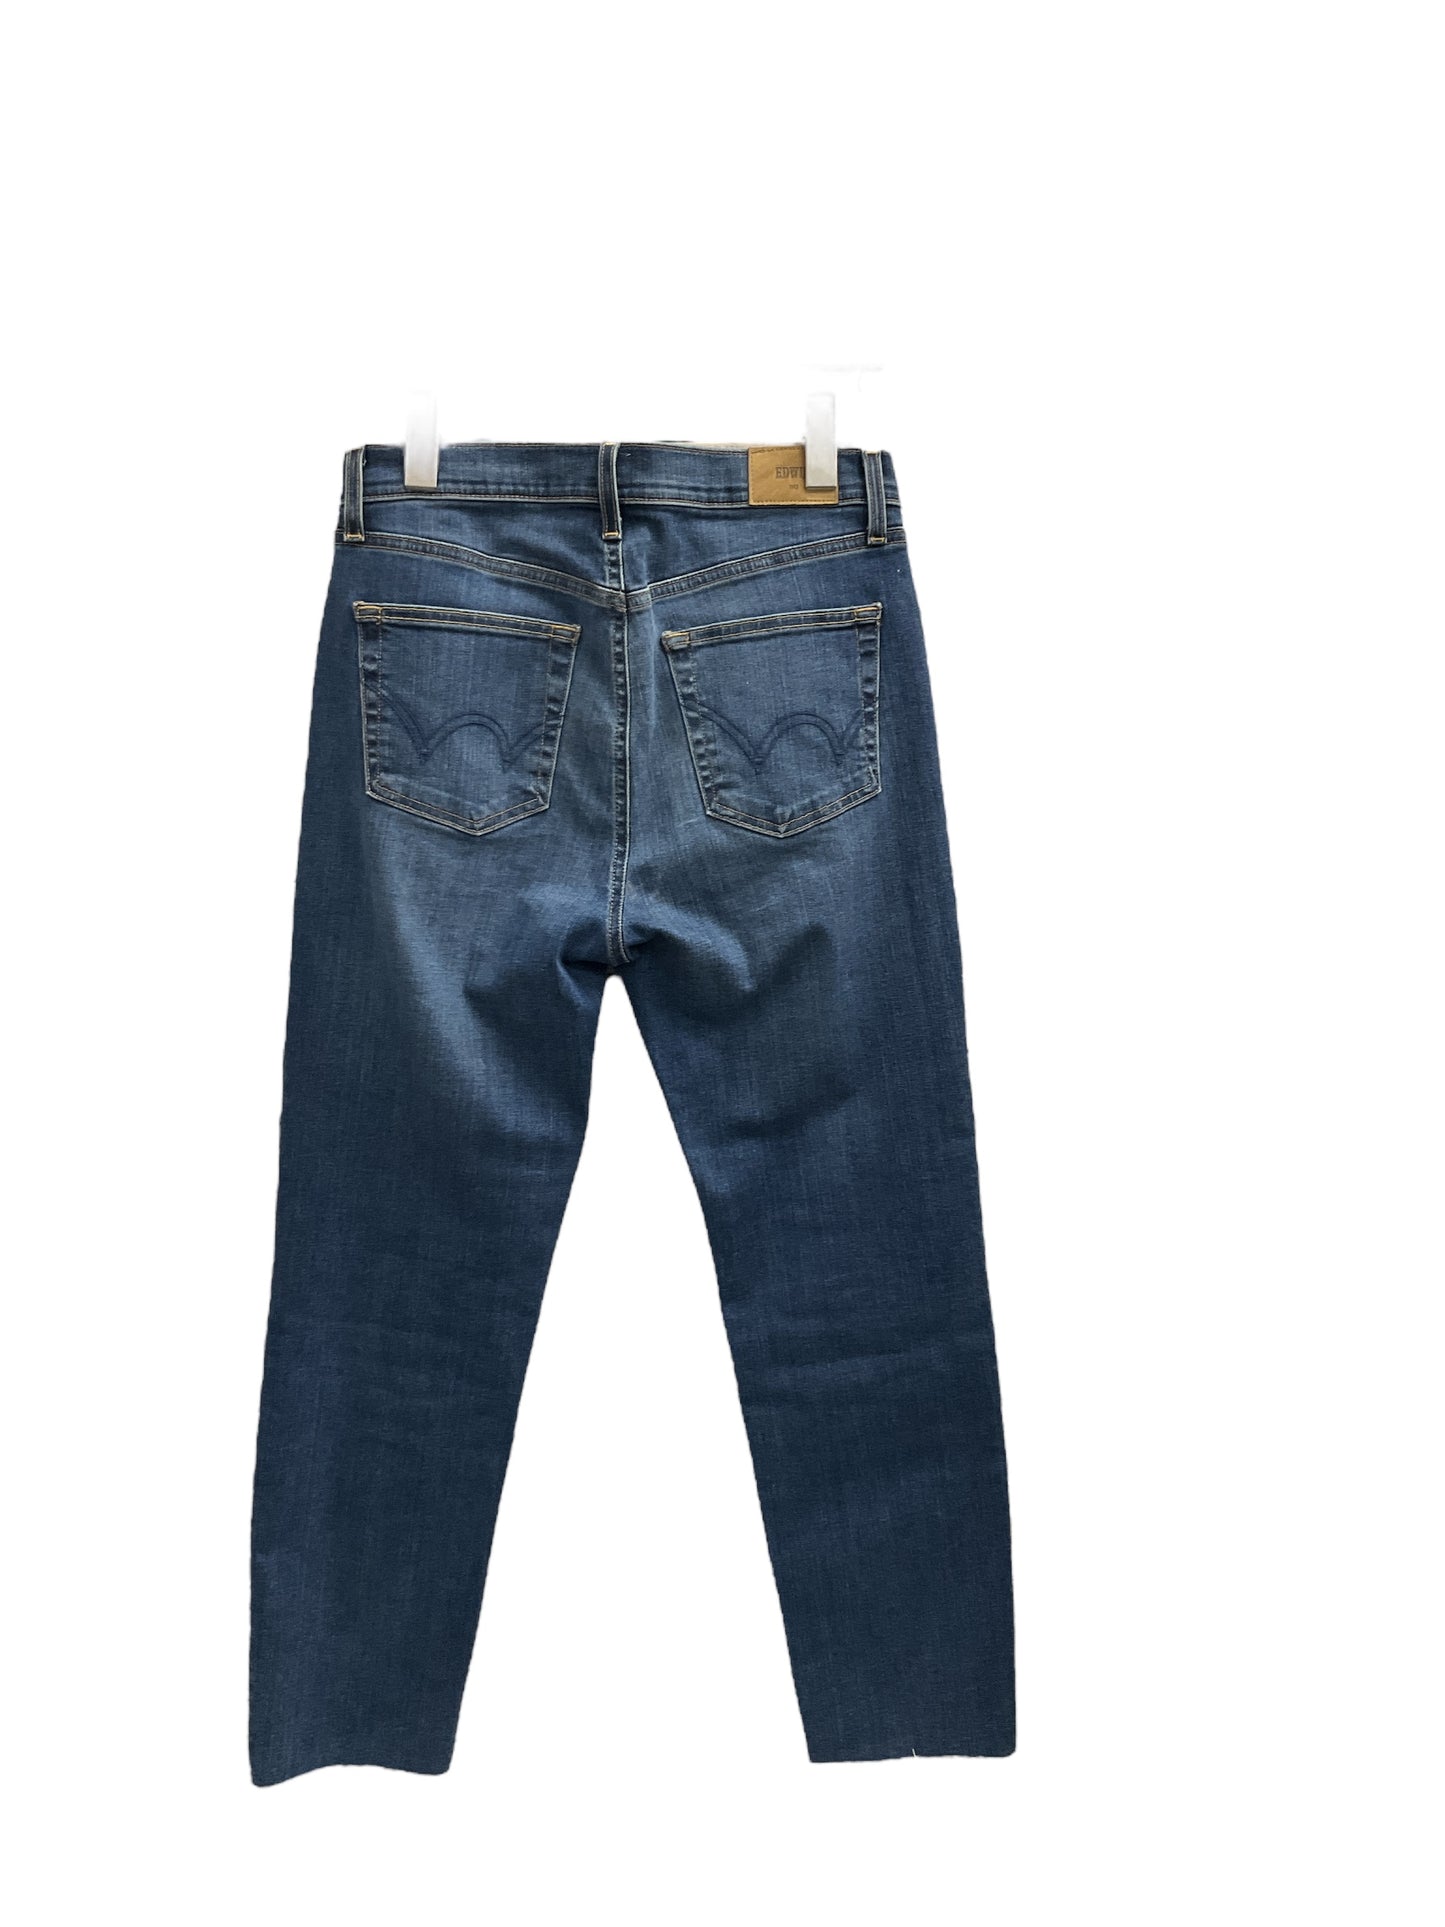 Jeans Skinny By Cma  Size: 6